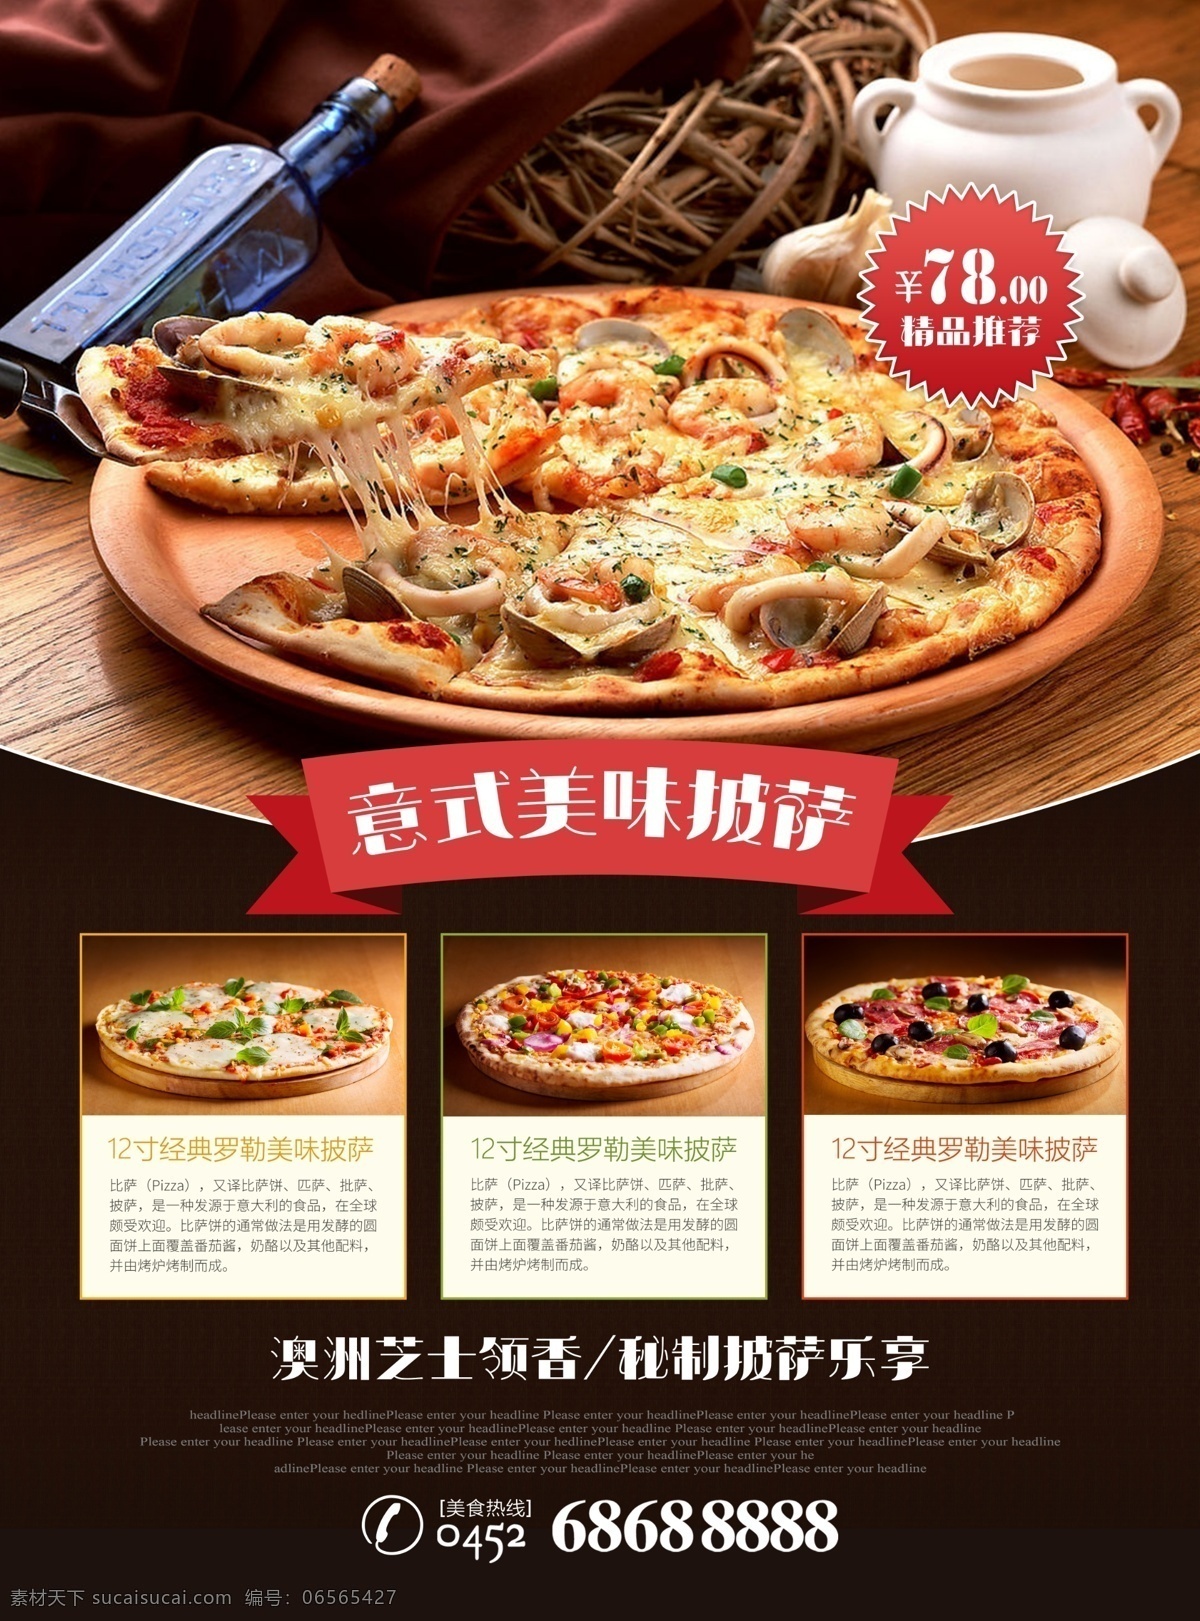 意 式 美味 披萨 宣传 广告 美味披萨 比萨 比萨饼 匹萨 批萨 美食 西餐 意式披萨 现烤披萨 促销 海报